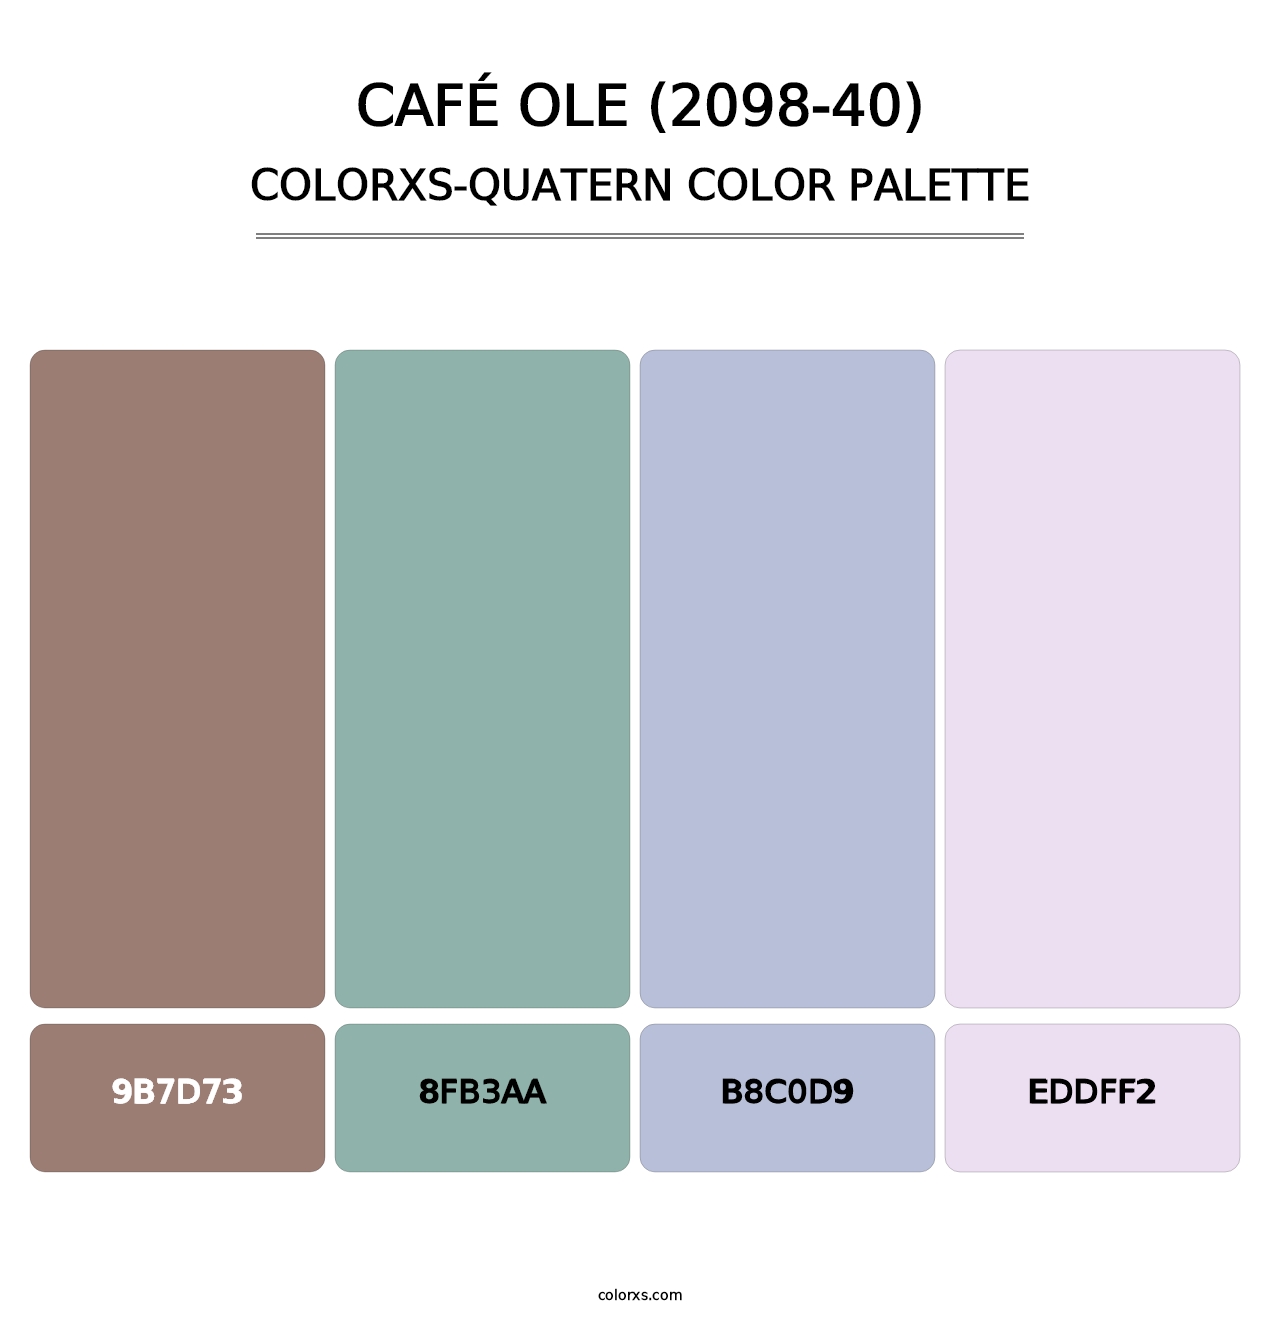 Café Ole (2098-40) - Colorxs Quatern Palette